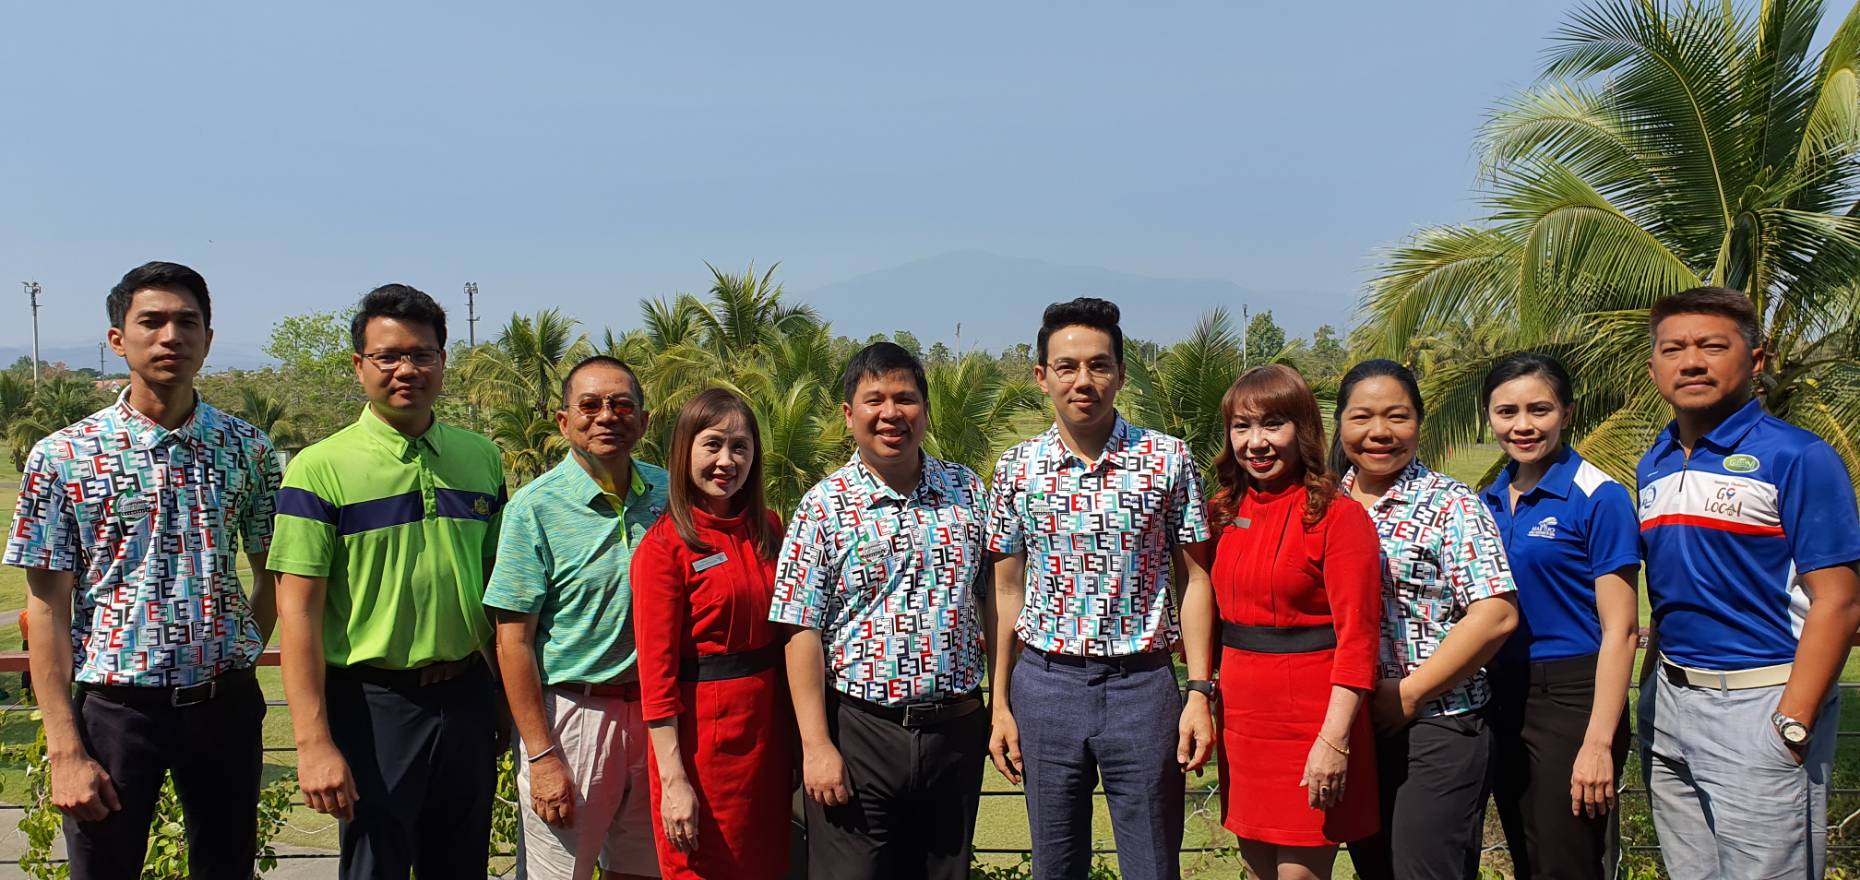 คณะกรรมการสมาคมกอล์ฟรีสอร์ทภาคเหนือประชุมเตรียมความพร้อมการจัดงาน Chiang Mai Golf Festival 2020